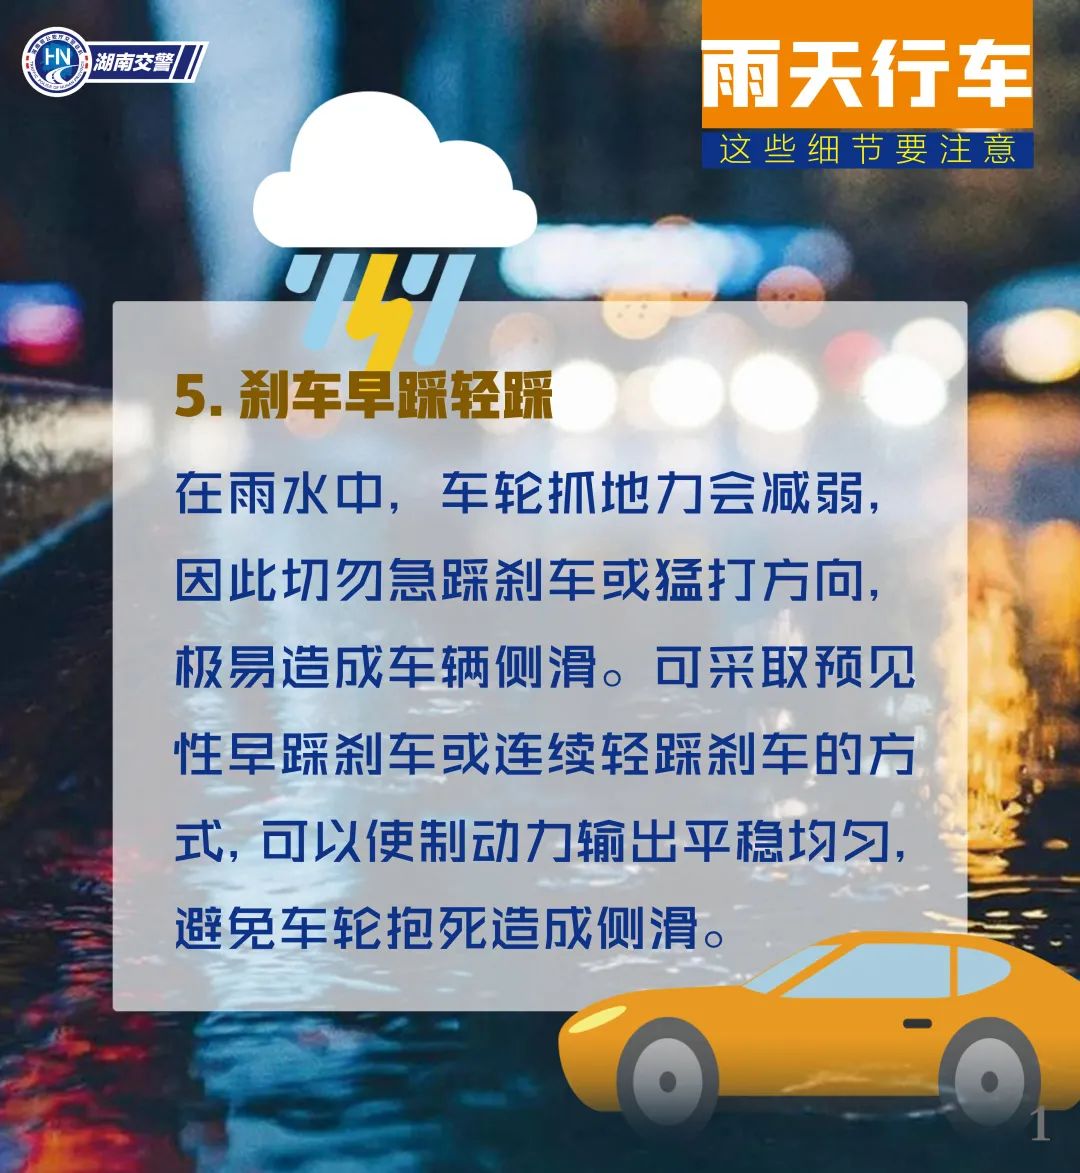 湖南发布今年第一个强对流天气预警 注意防范雷暴大风冰雹等影响 - 湖湘自然 - 新湖南